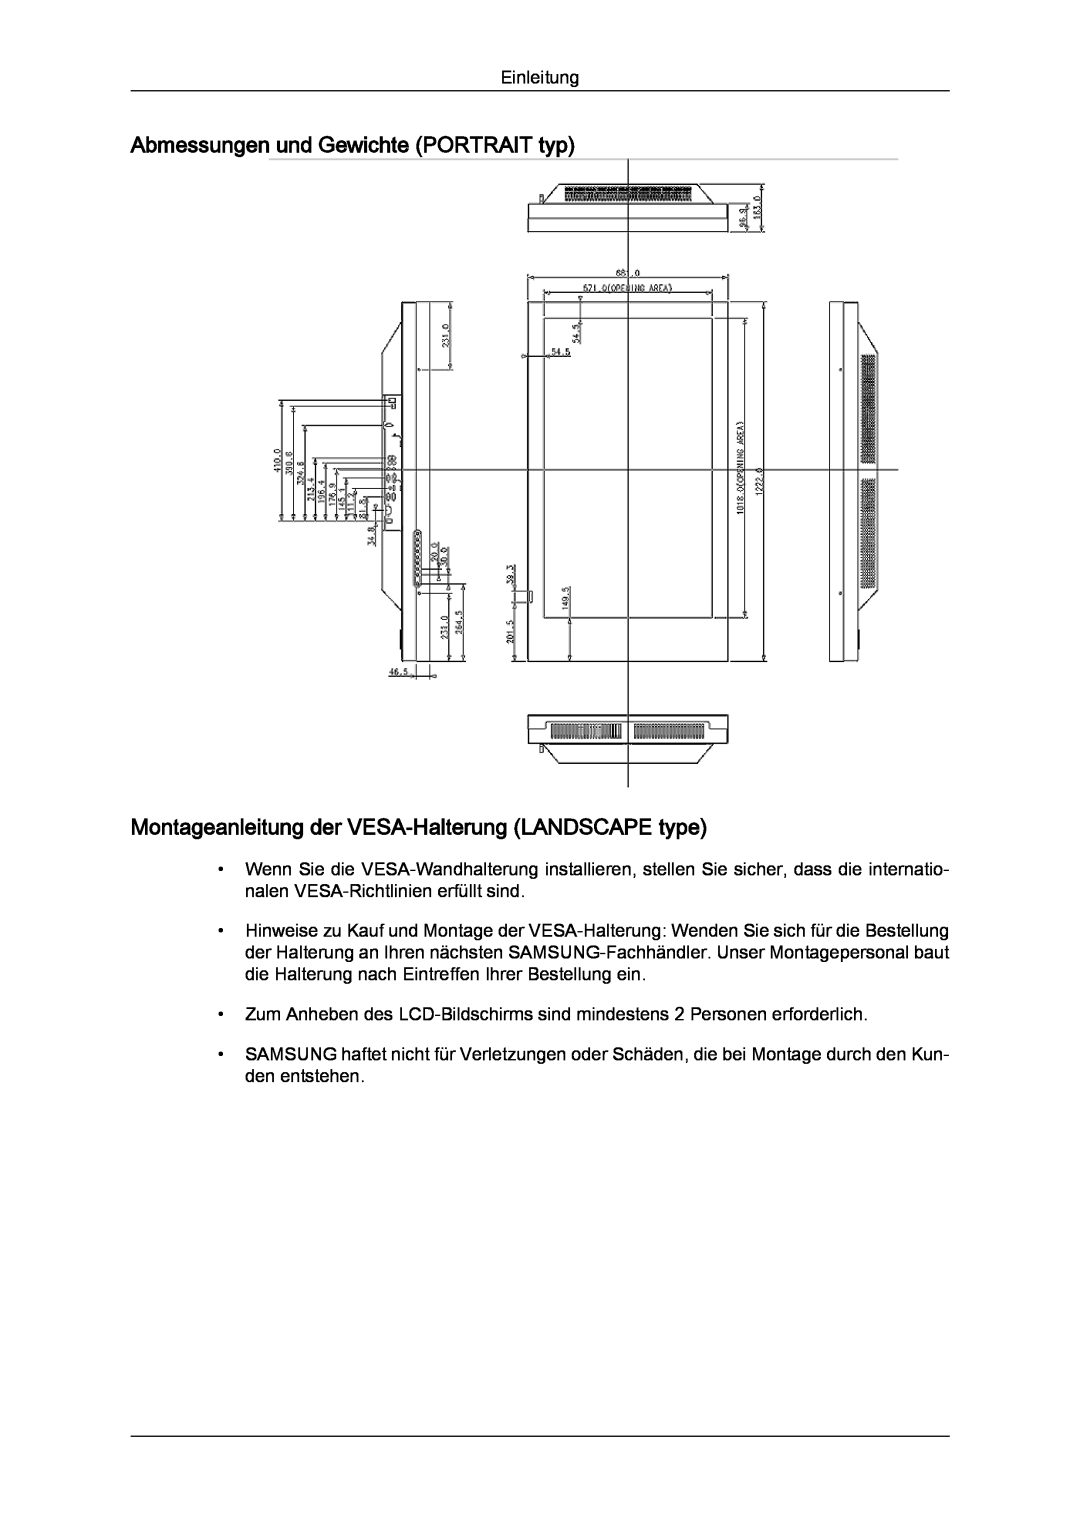 Samsung LH46SOPQBC/EN manual Abmessungen und Gewichte PORTRAIT typ, Montageanleitung der VESA-Halterung LANDSCAPE type 